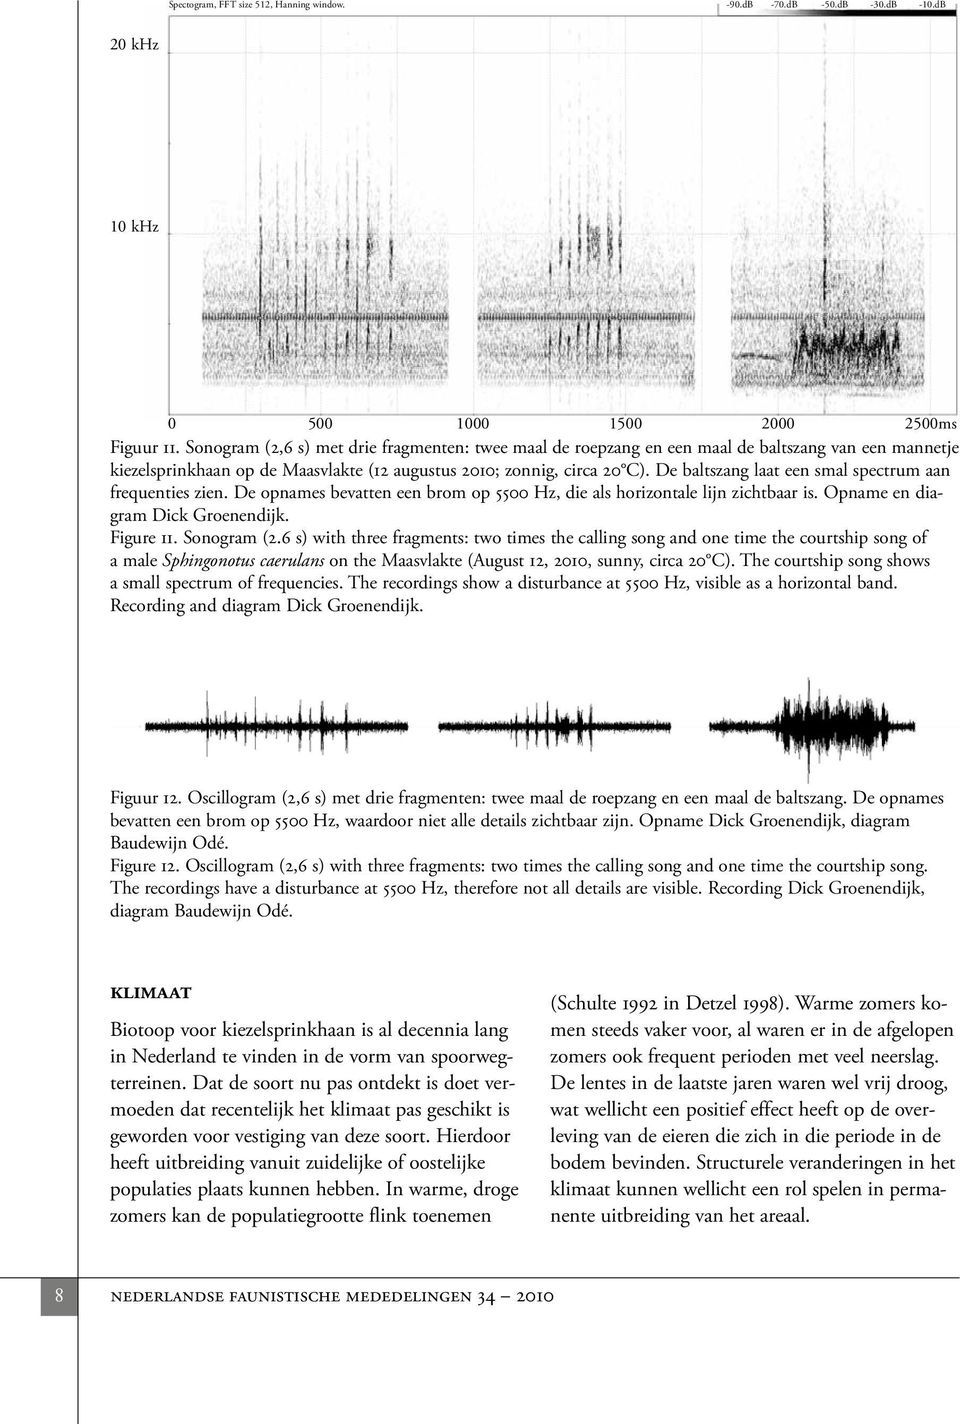 De baltszang laat een smal spectrum aan frequenties zien. De opnames bevatten een brom op 5500 Hz, die als horizontale lijn zichtbaar is. Opname en diagram Dick Groenendijk. Figure 11. Sonogram (2.